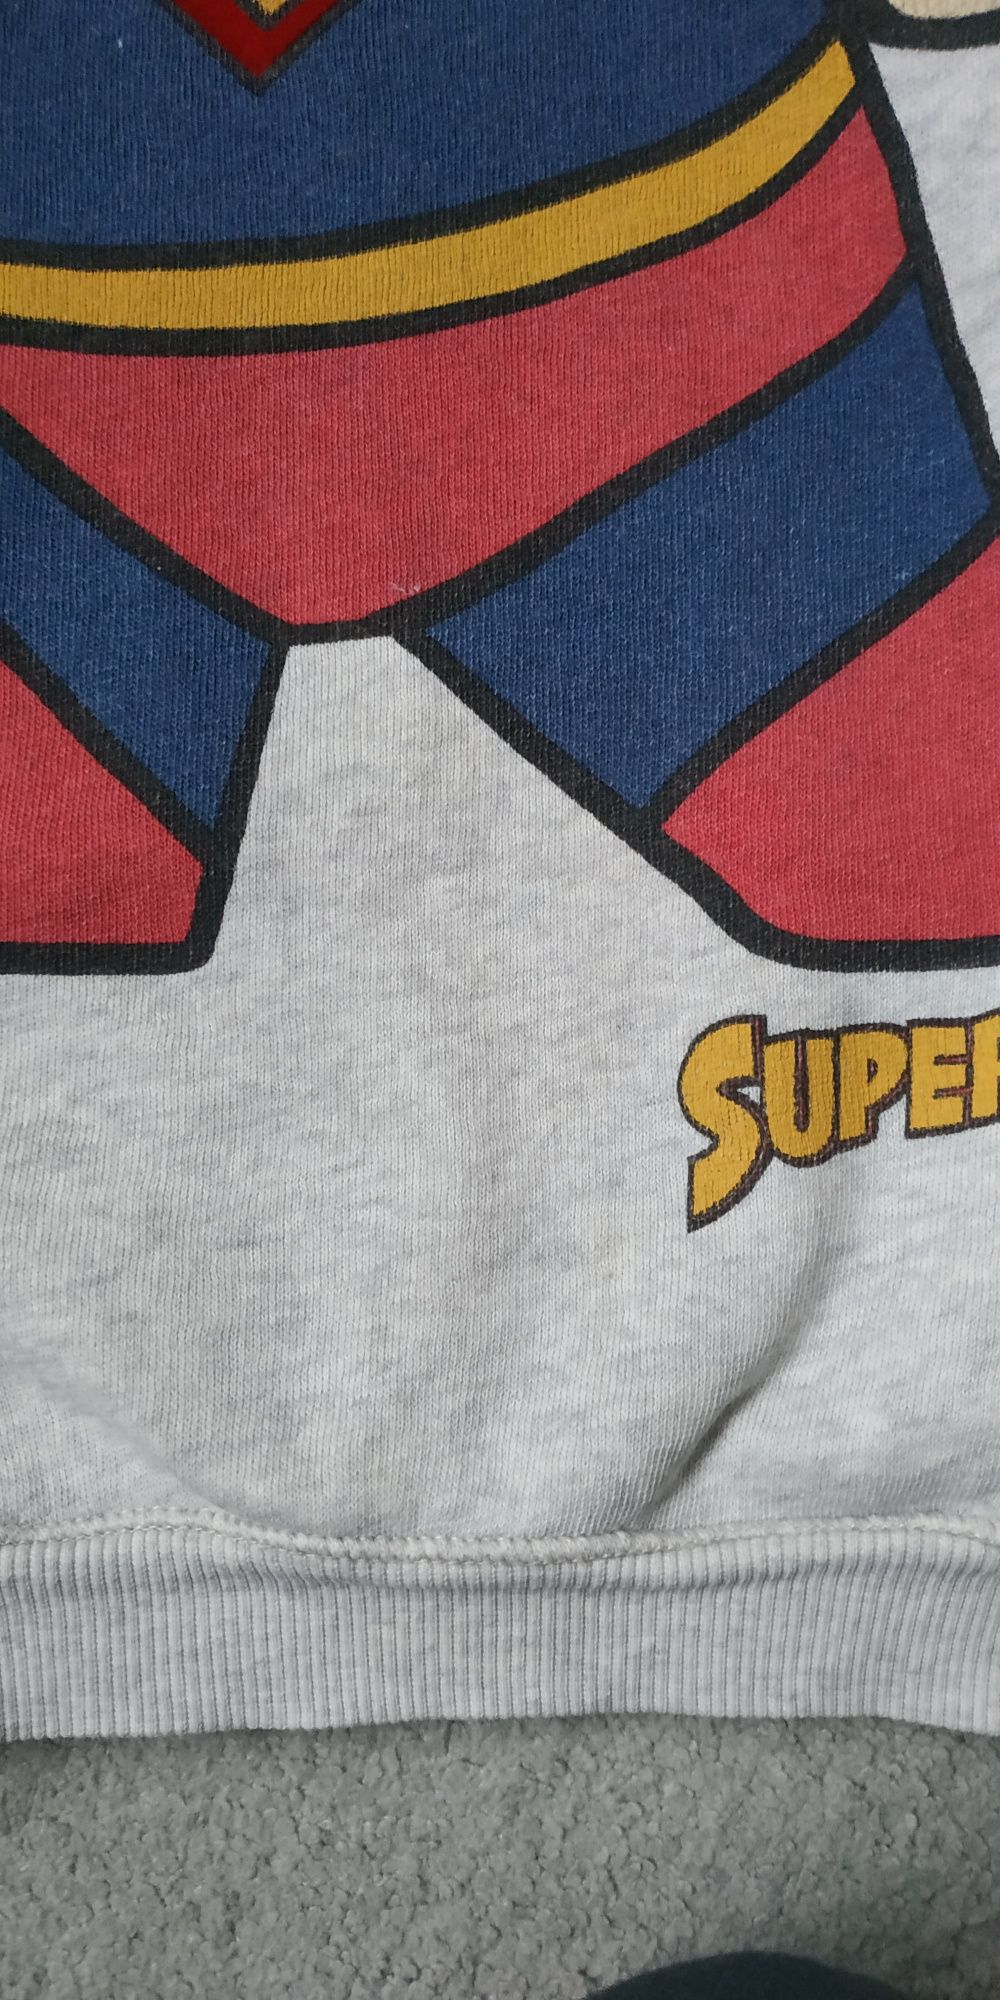 Bluza dla dziecka Superman Zara